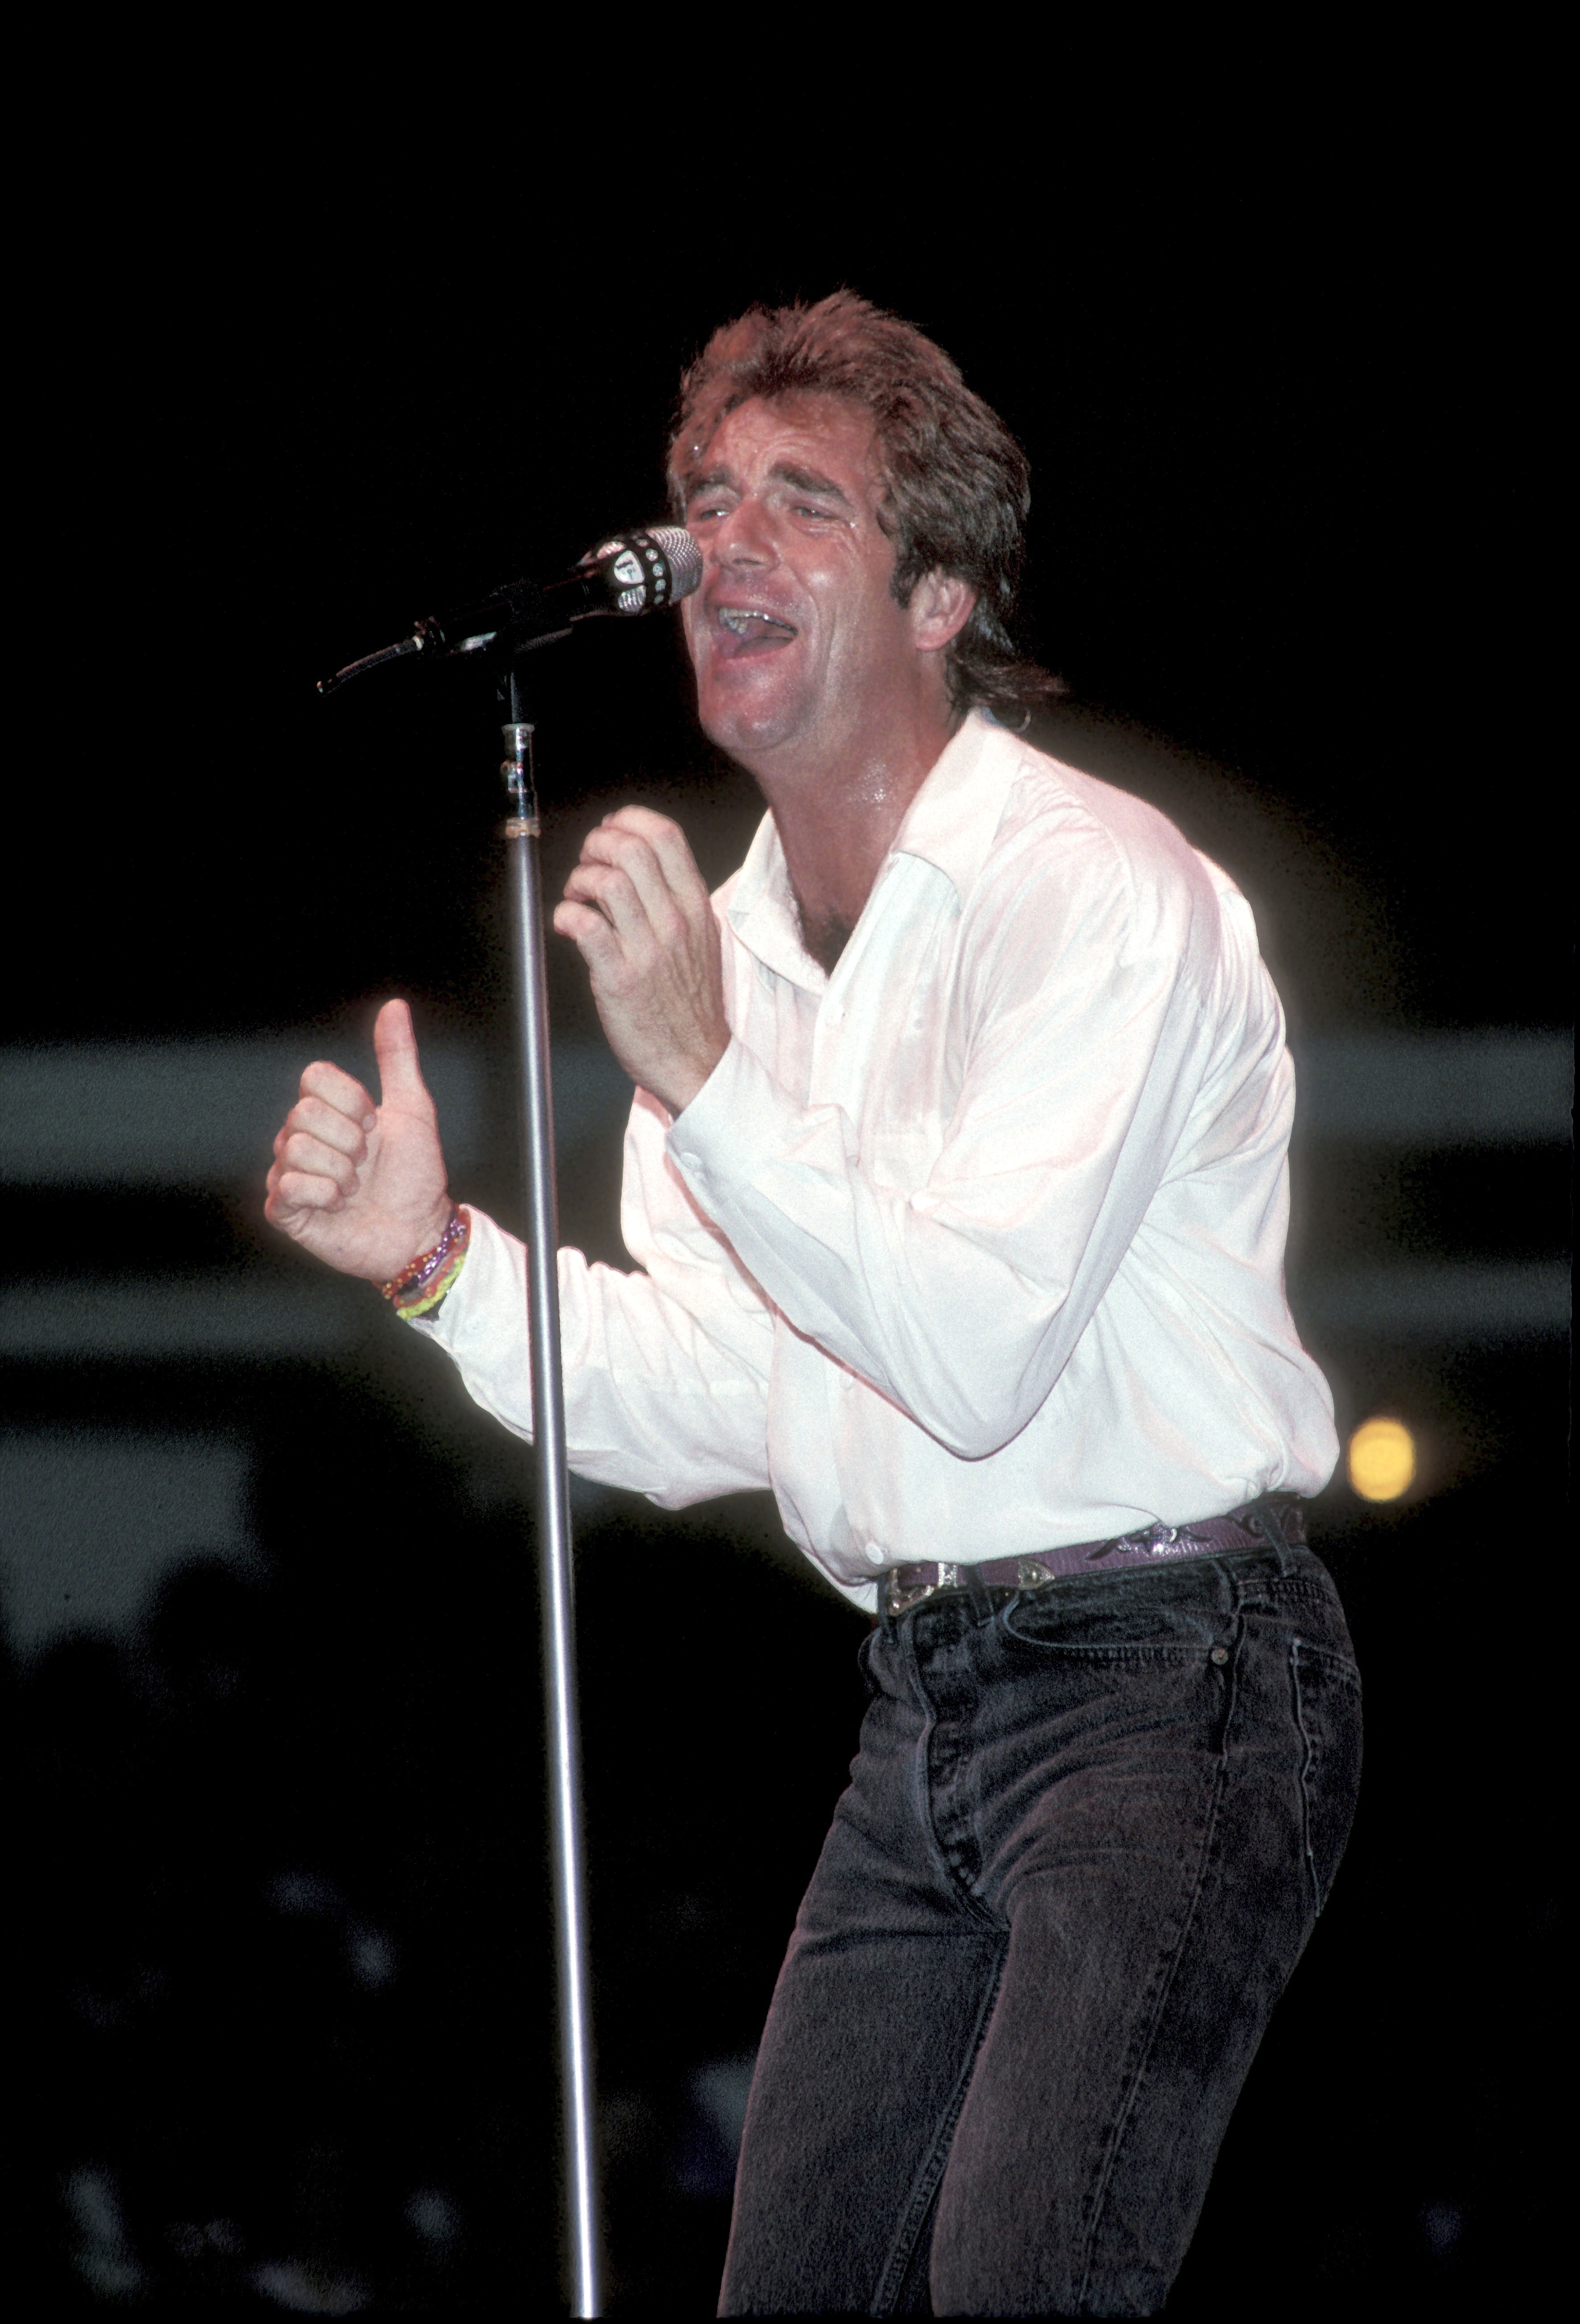 El músico durante una actuación en directo el 31 de agosto de 1992. | Fuente: Getty Images